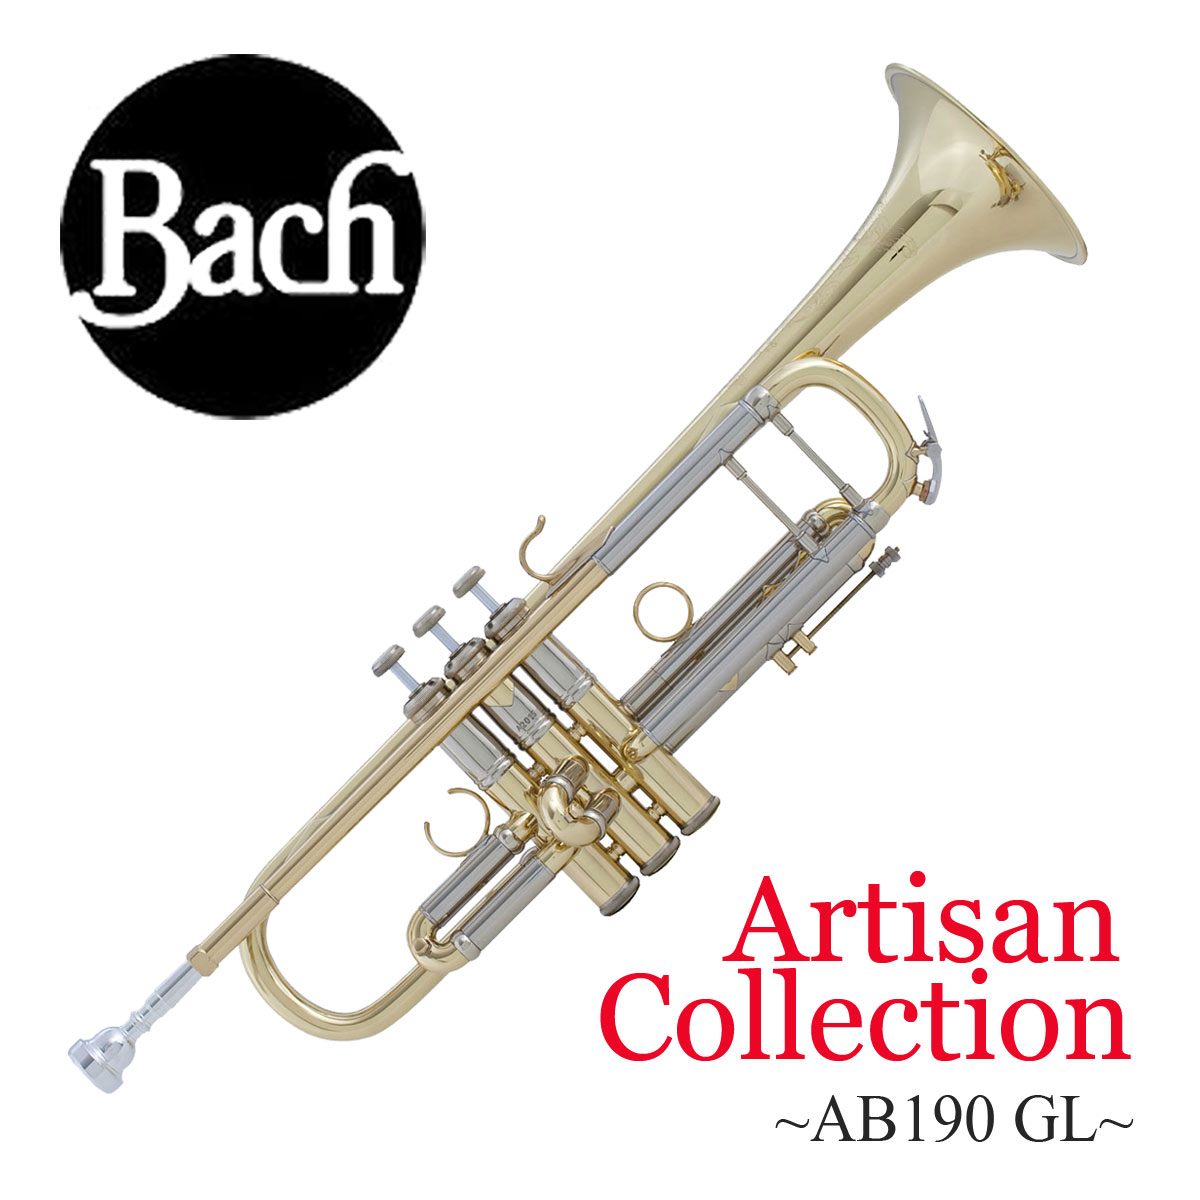 Bach バック Artisan Collection AB190 GL アルティザン イエローブラスベル ラッカー仕上げ トランペット B♭  【お取り寄せ】 イシバシ楽器